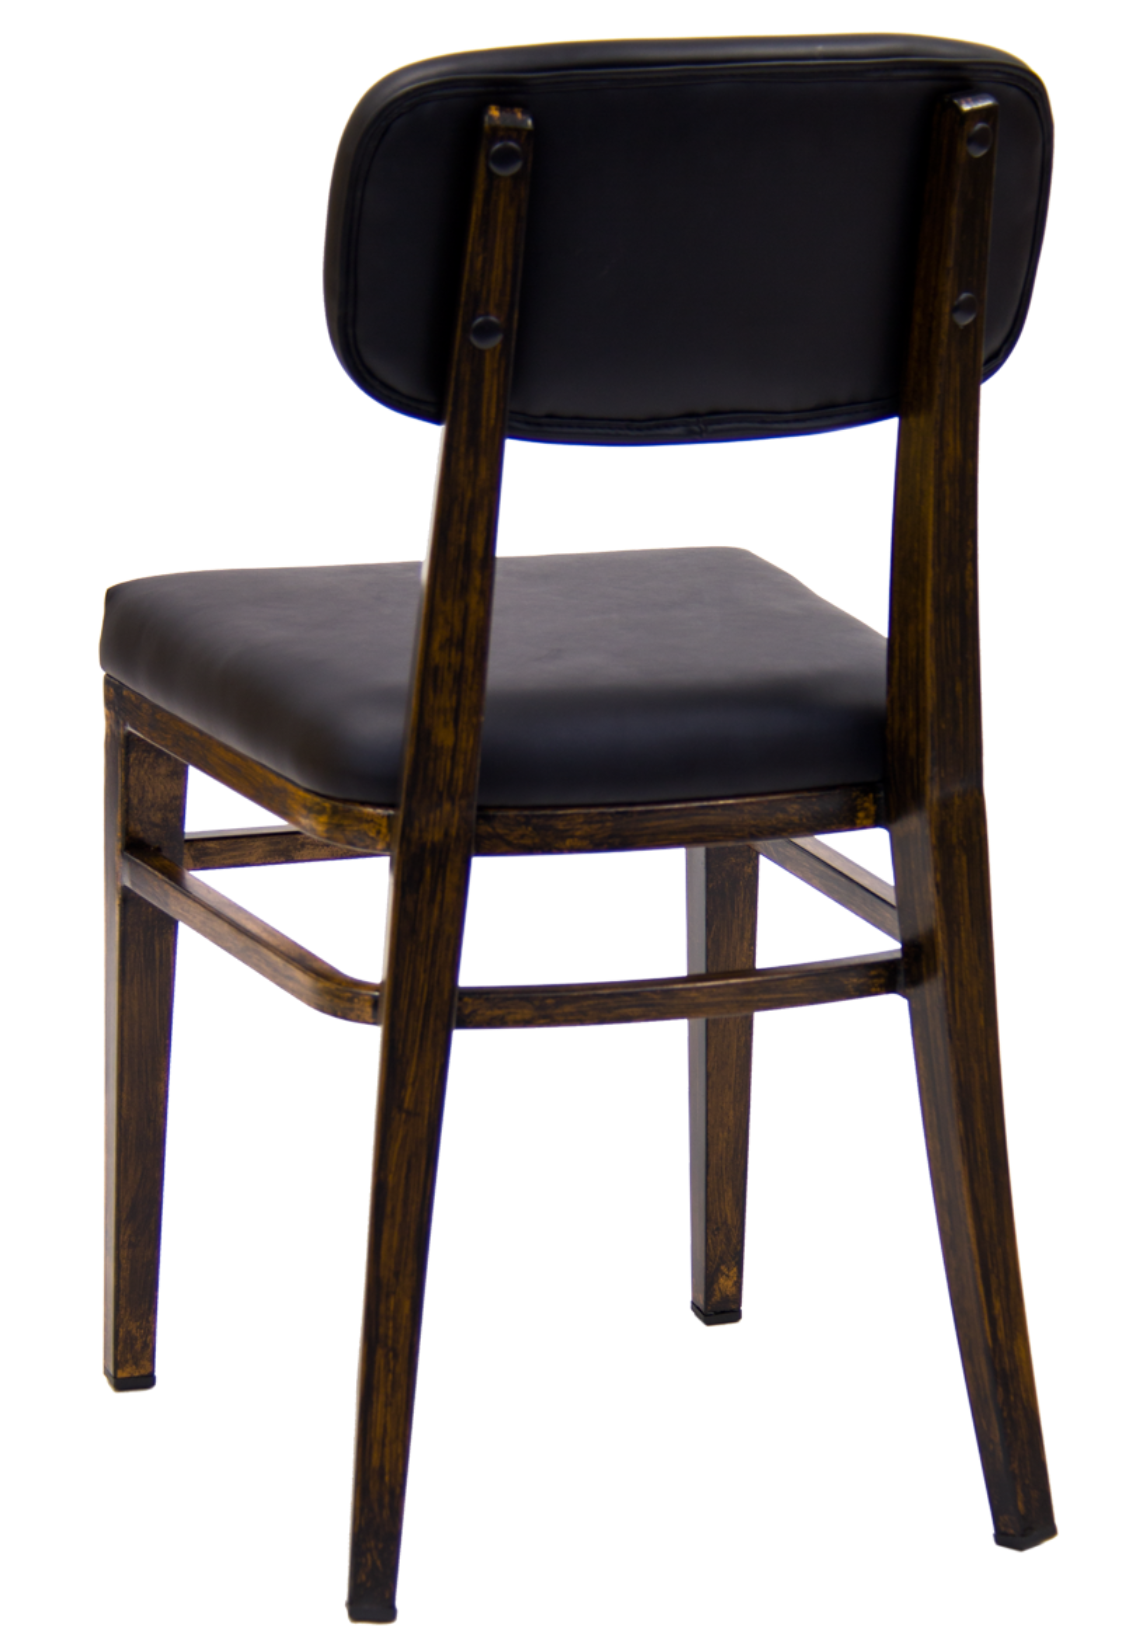 Ratliff Upholstered Vintage Black Metal Frame Restaurant Dining Chair